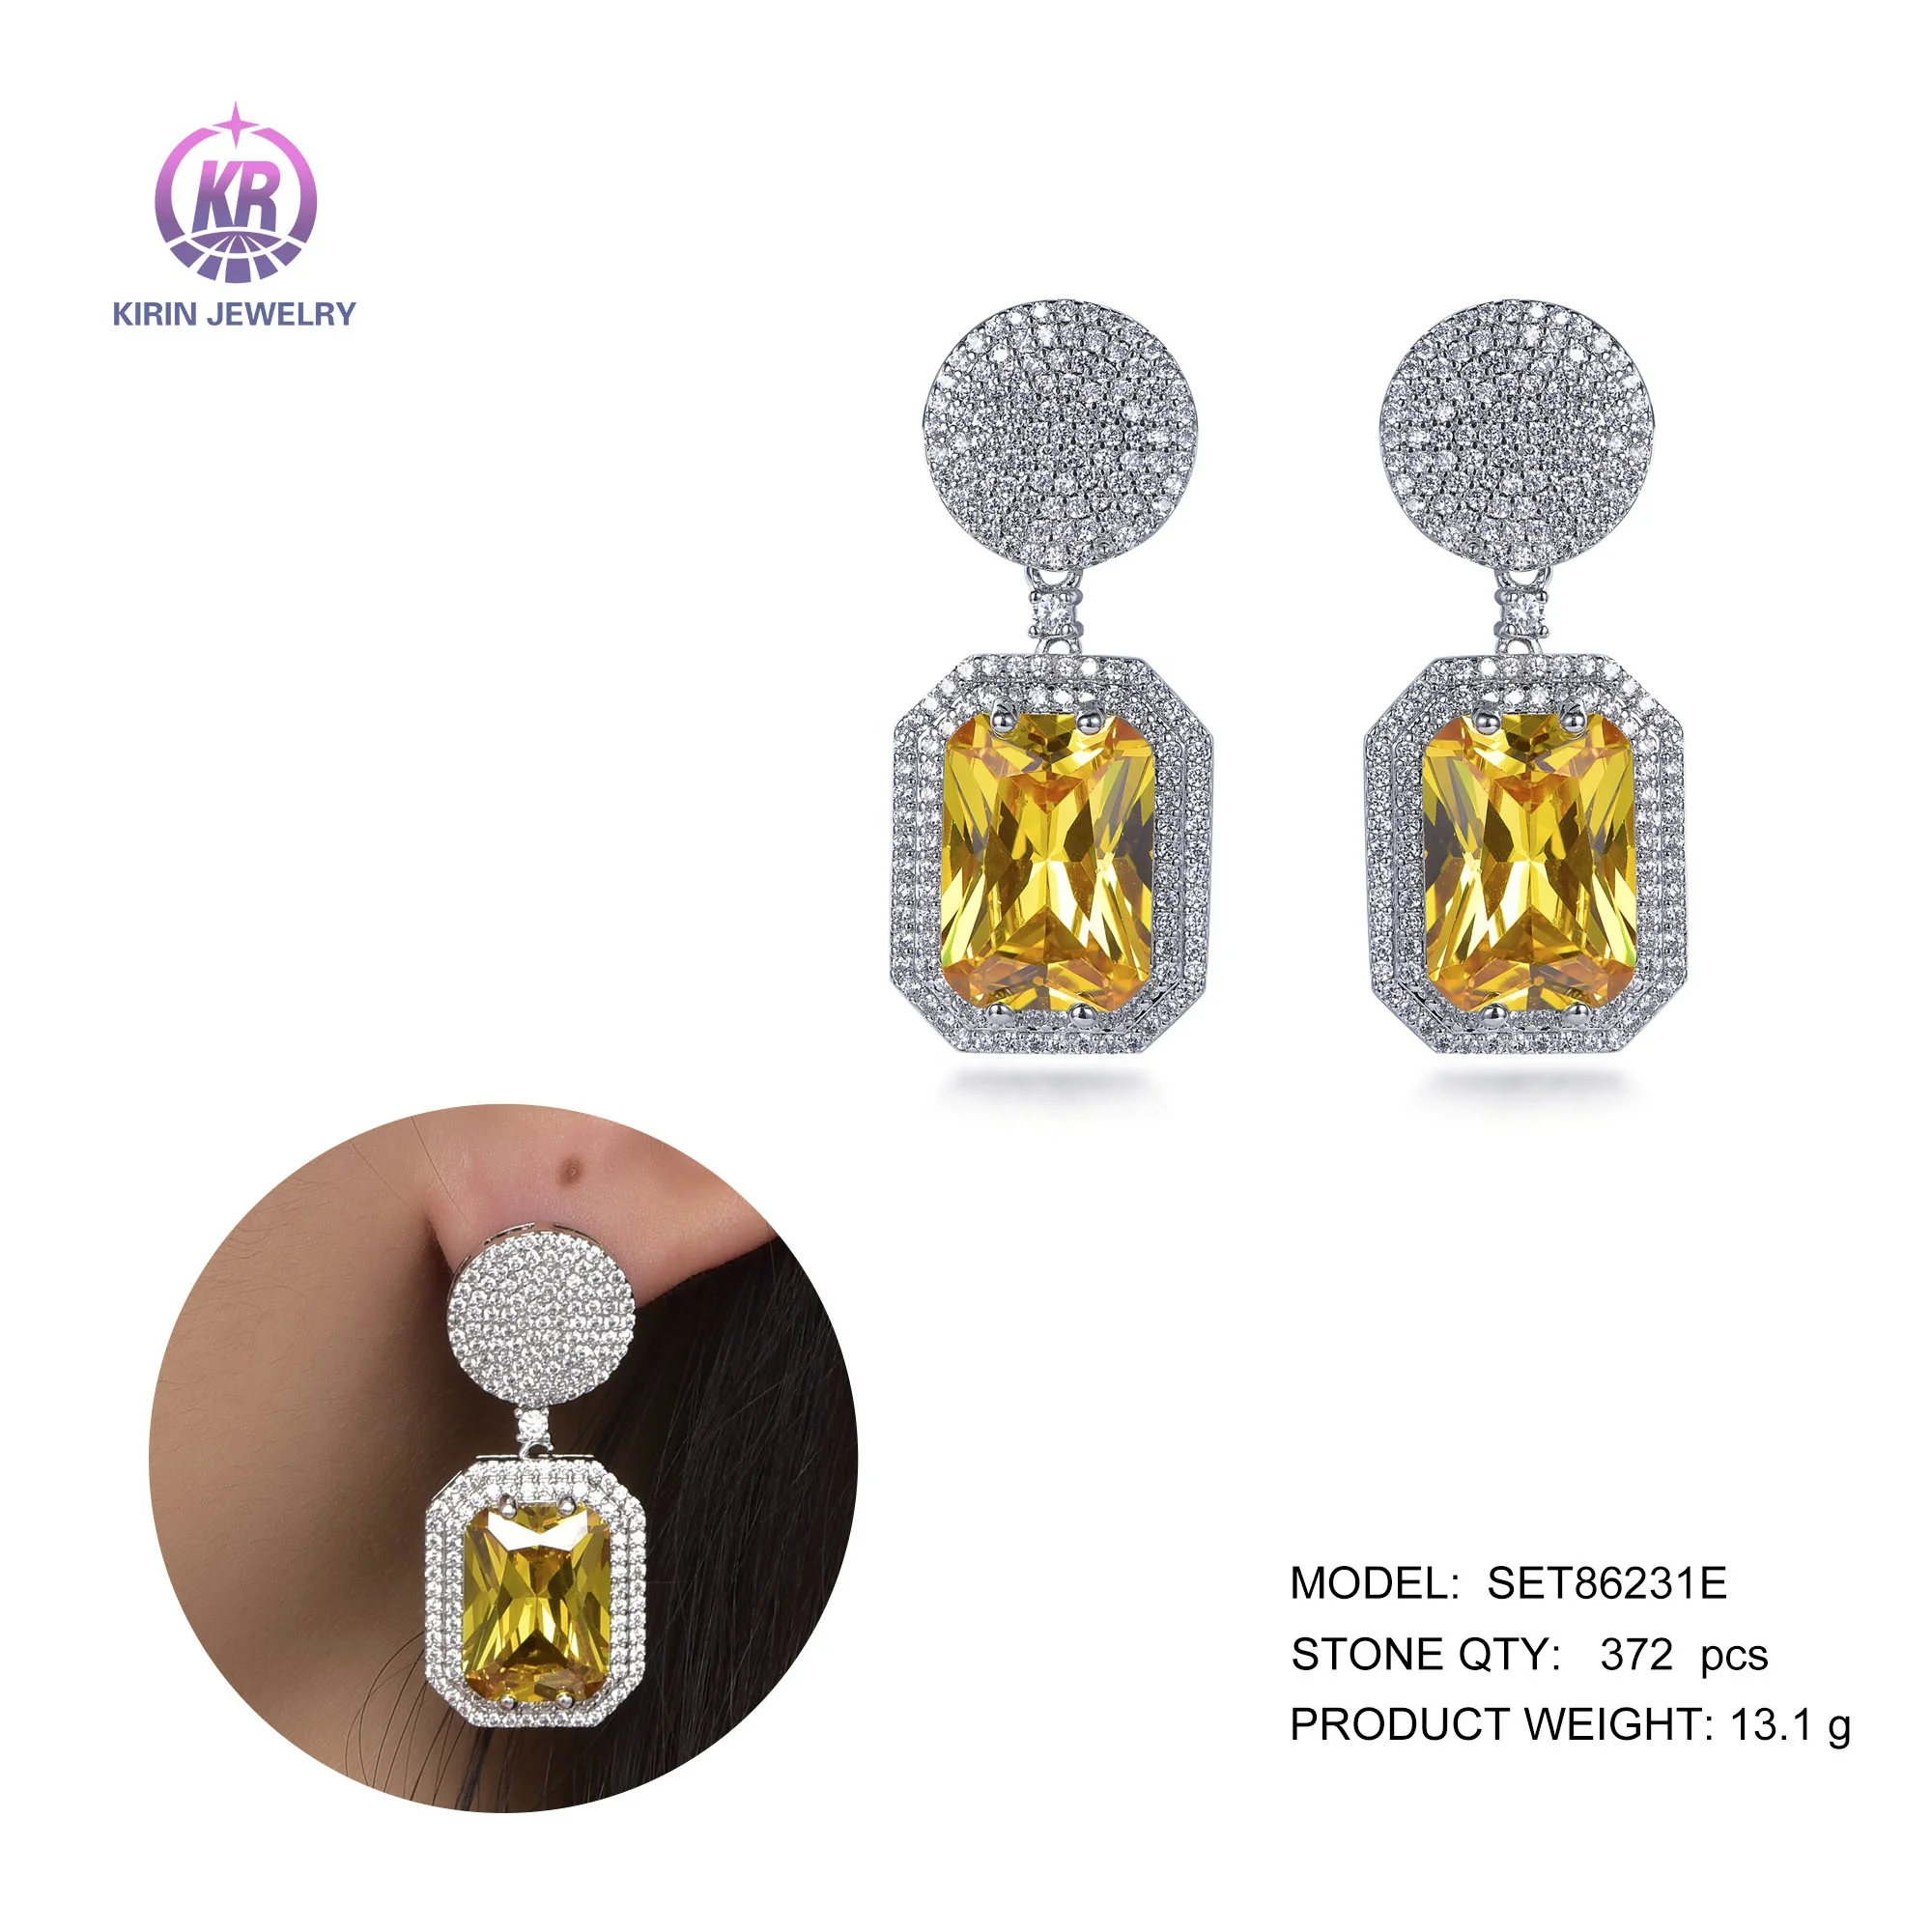 925 sterling silver drop earrings yellow crystal earrings pave cz canary zircon drop earrings